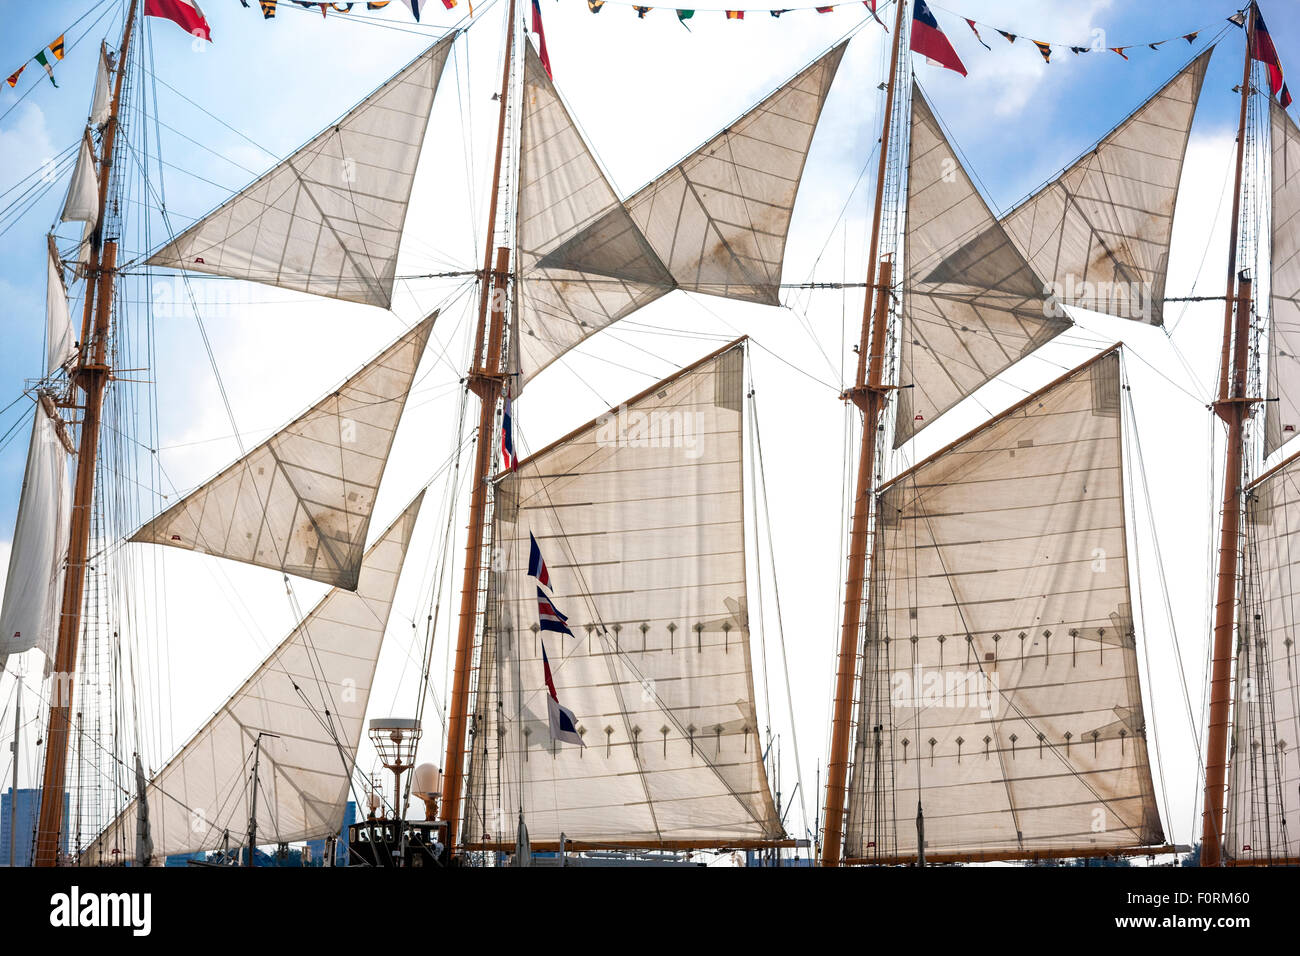 Le grand voilier Esmeralda du Chili, de l'Amsterdam Sail 2015 Banque D'Images